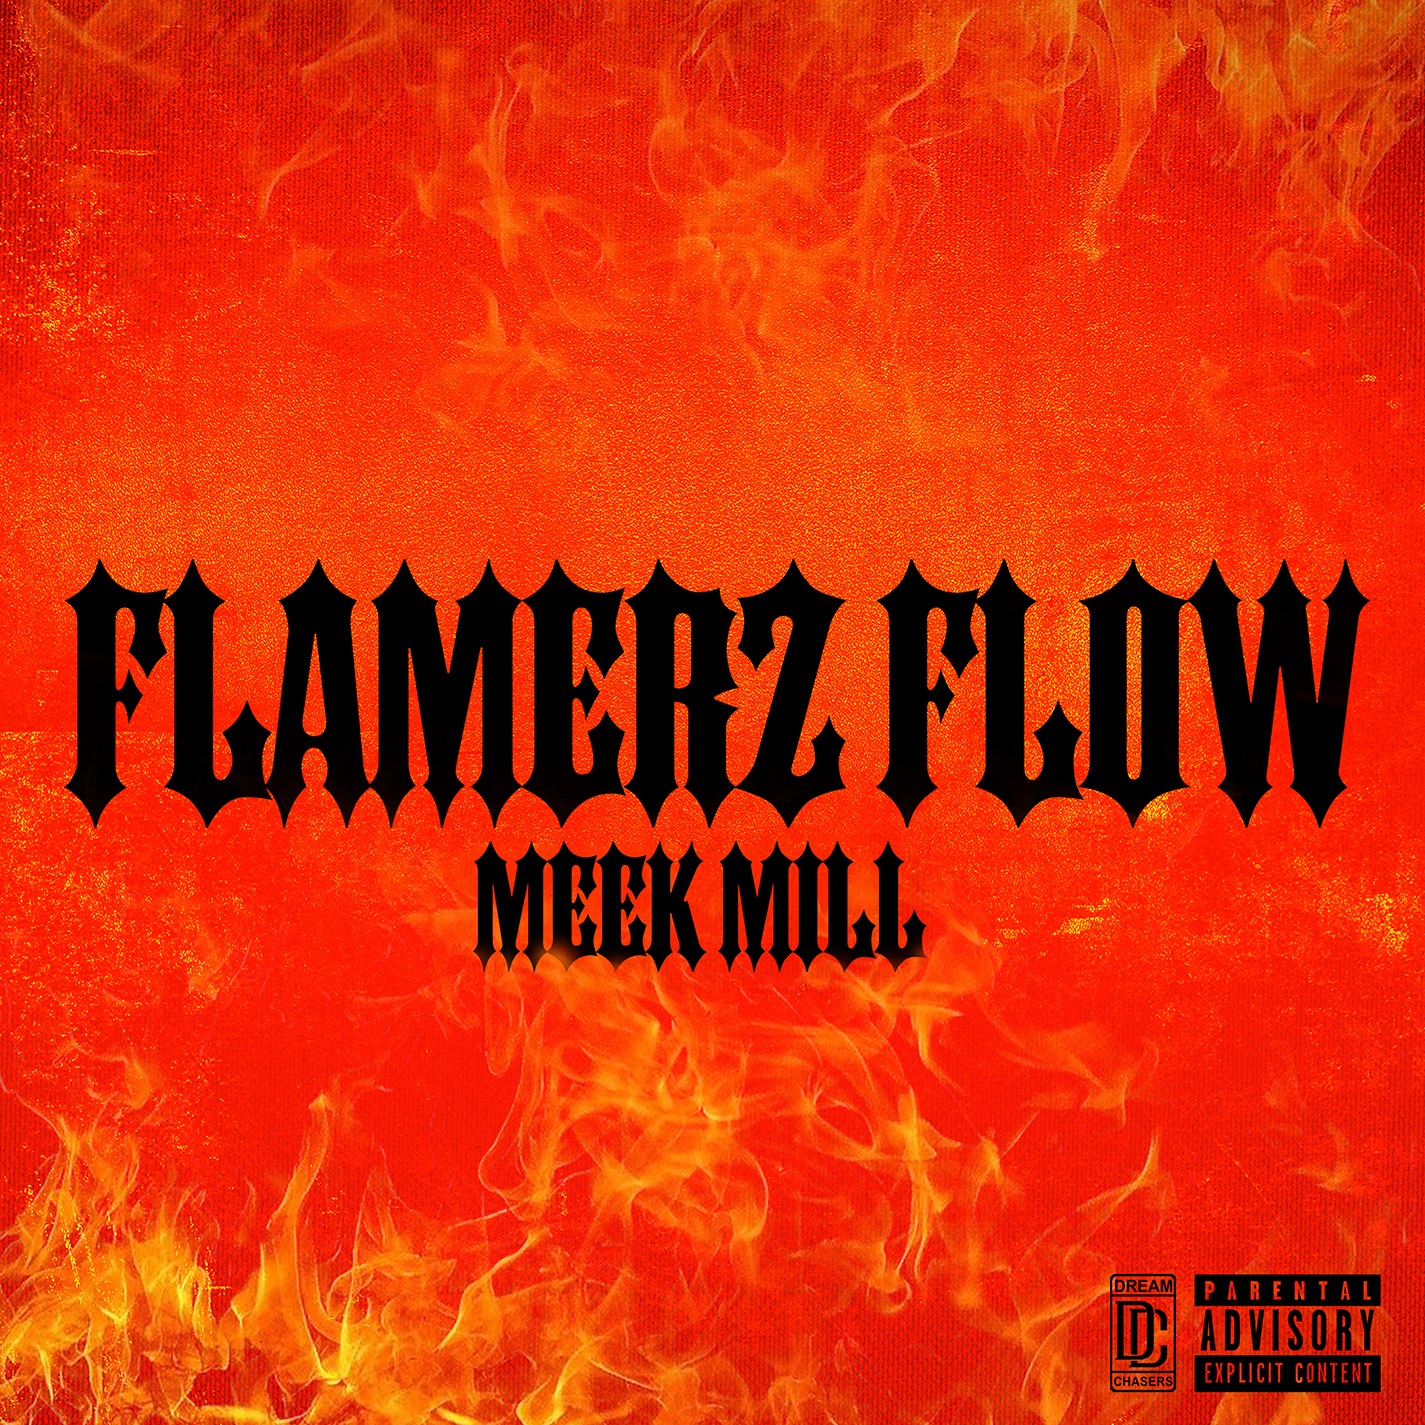 Meek Mill - Flamerz Flow - Single